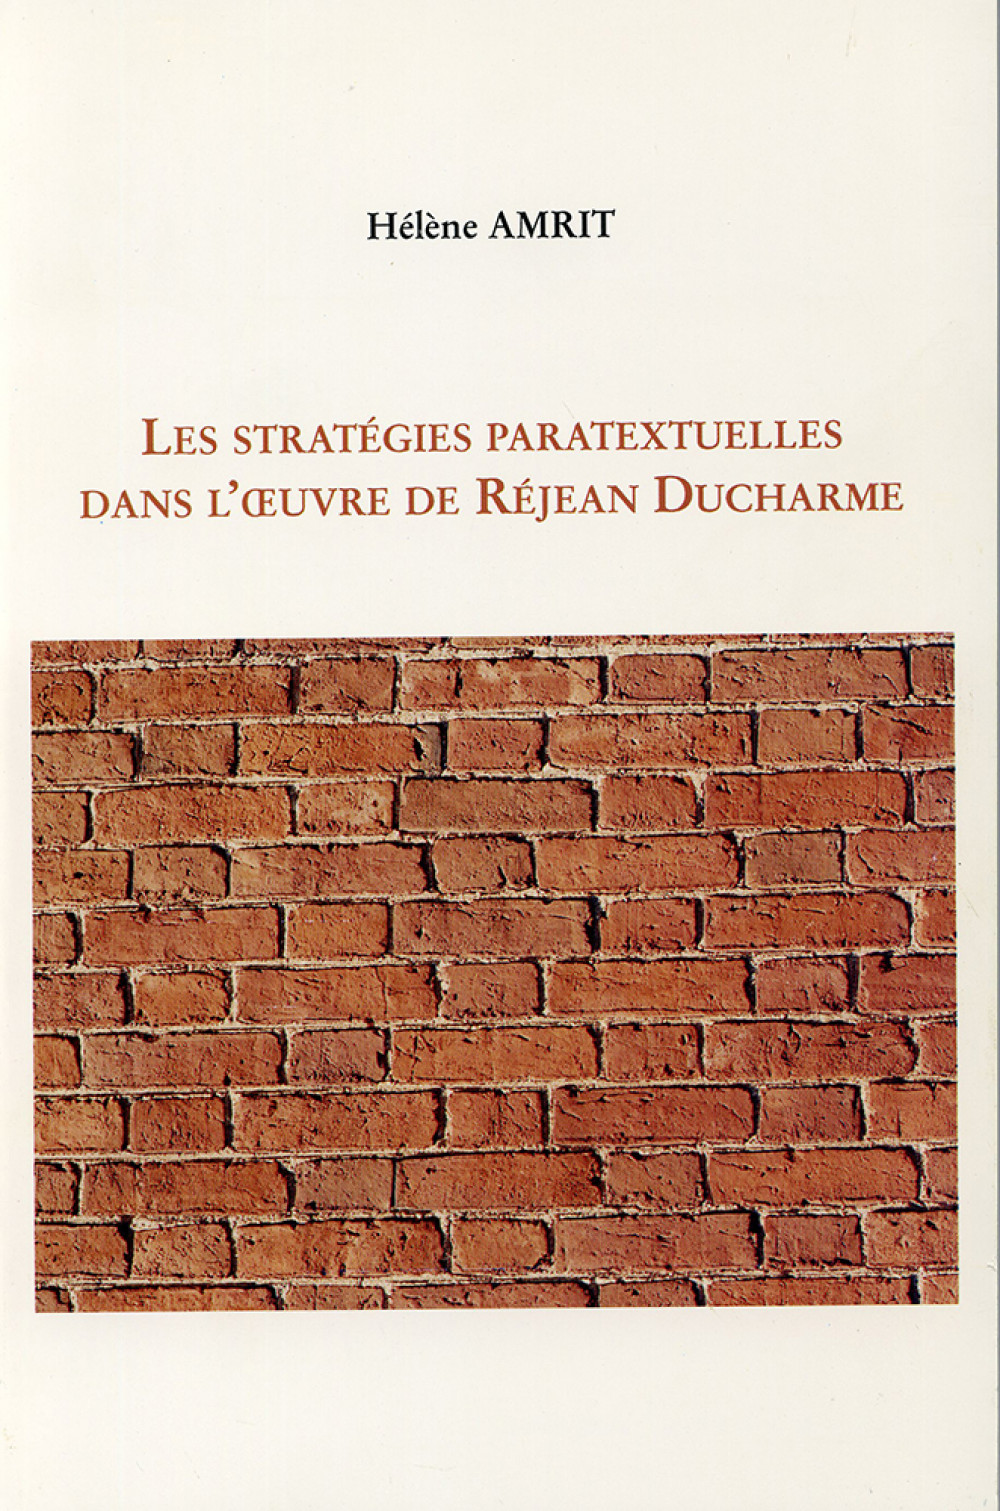 Les stratégies paratextuelles dans l'oeuvre de Réjean Ducharme